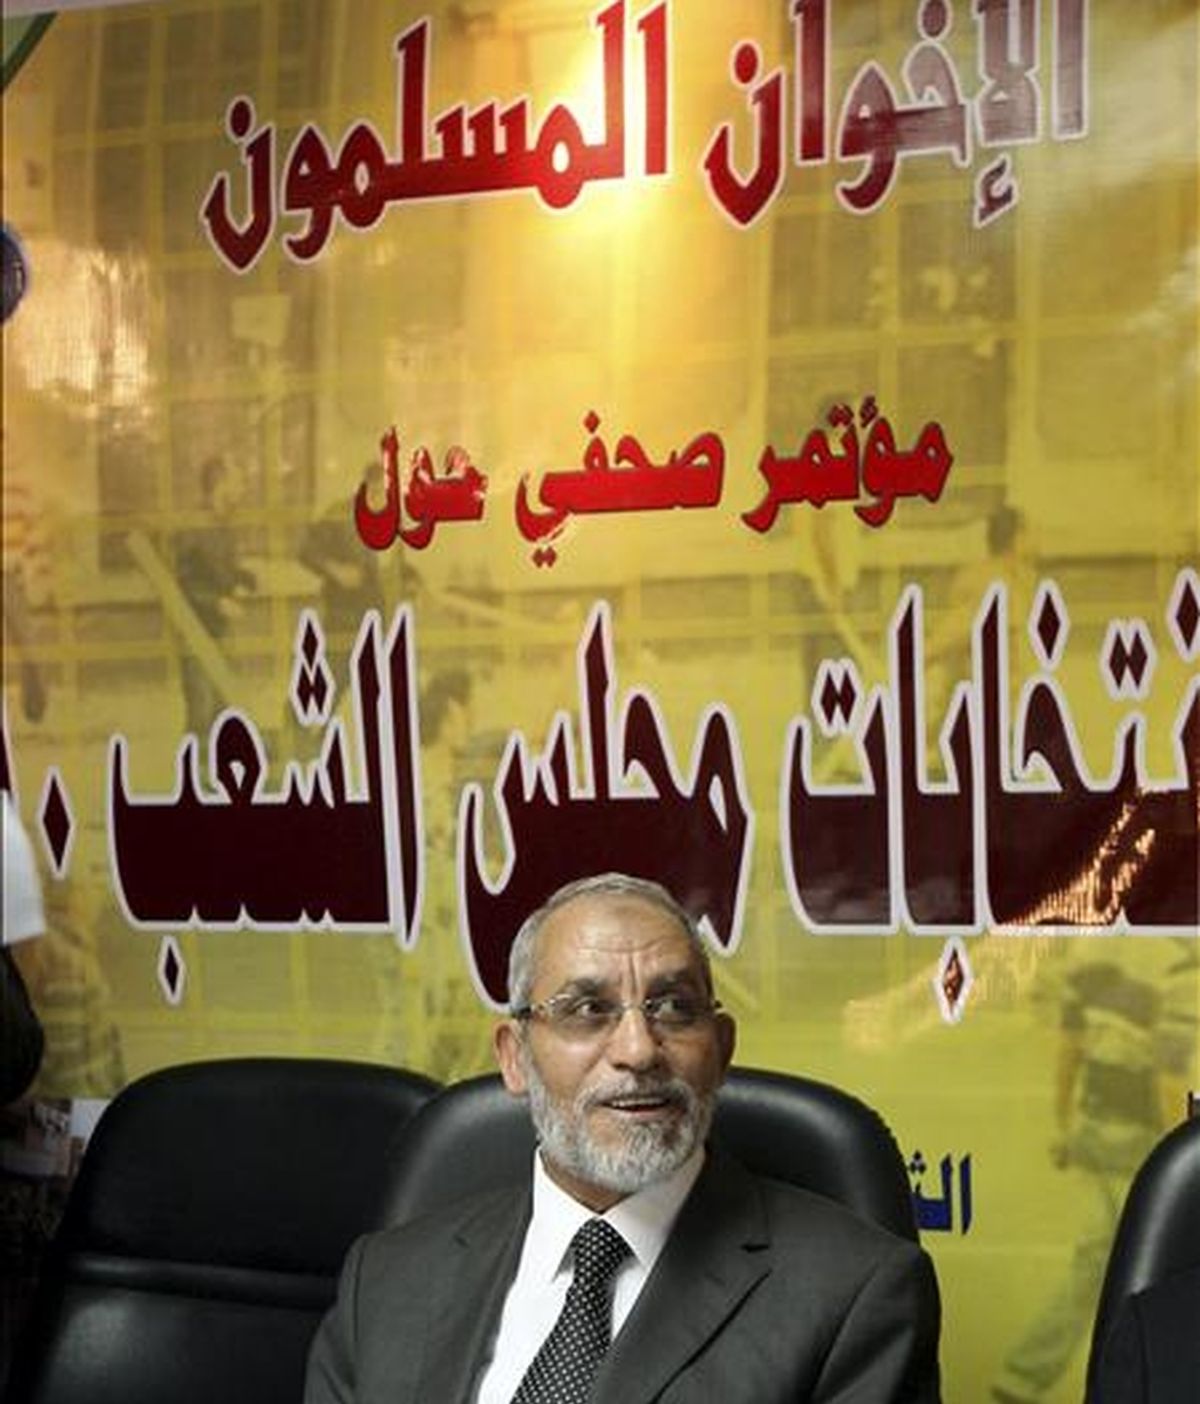 El jefe egipcio del movimiento Hermanos Musulmanes, Mohamed Badia, habla con los medios durante una conferencia de prensa en El Cairo, Egipto. EFE